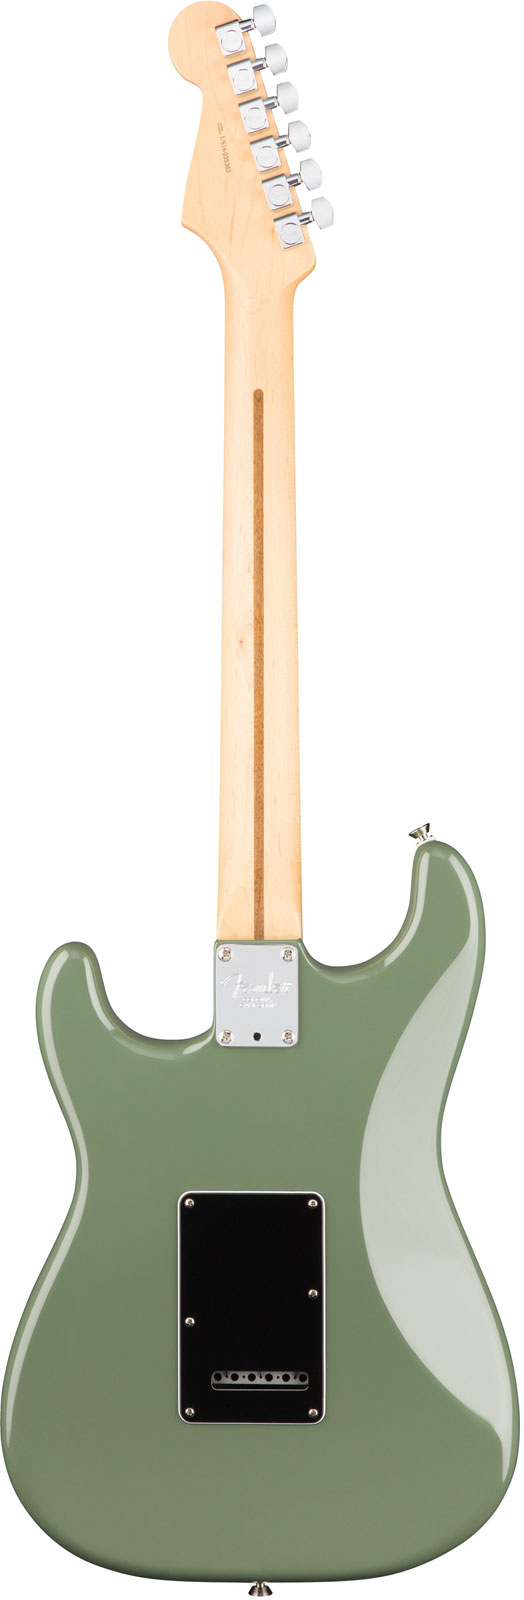 Fender Strat American Professional 2017 3s Usa Mn - Antique Olive - E-Gitarre in Str-Form - Variation 2